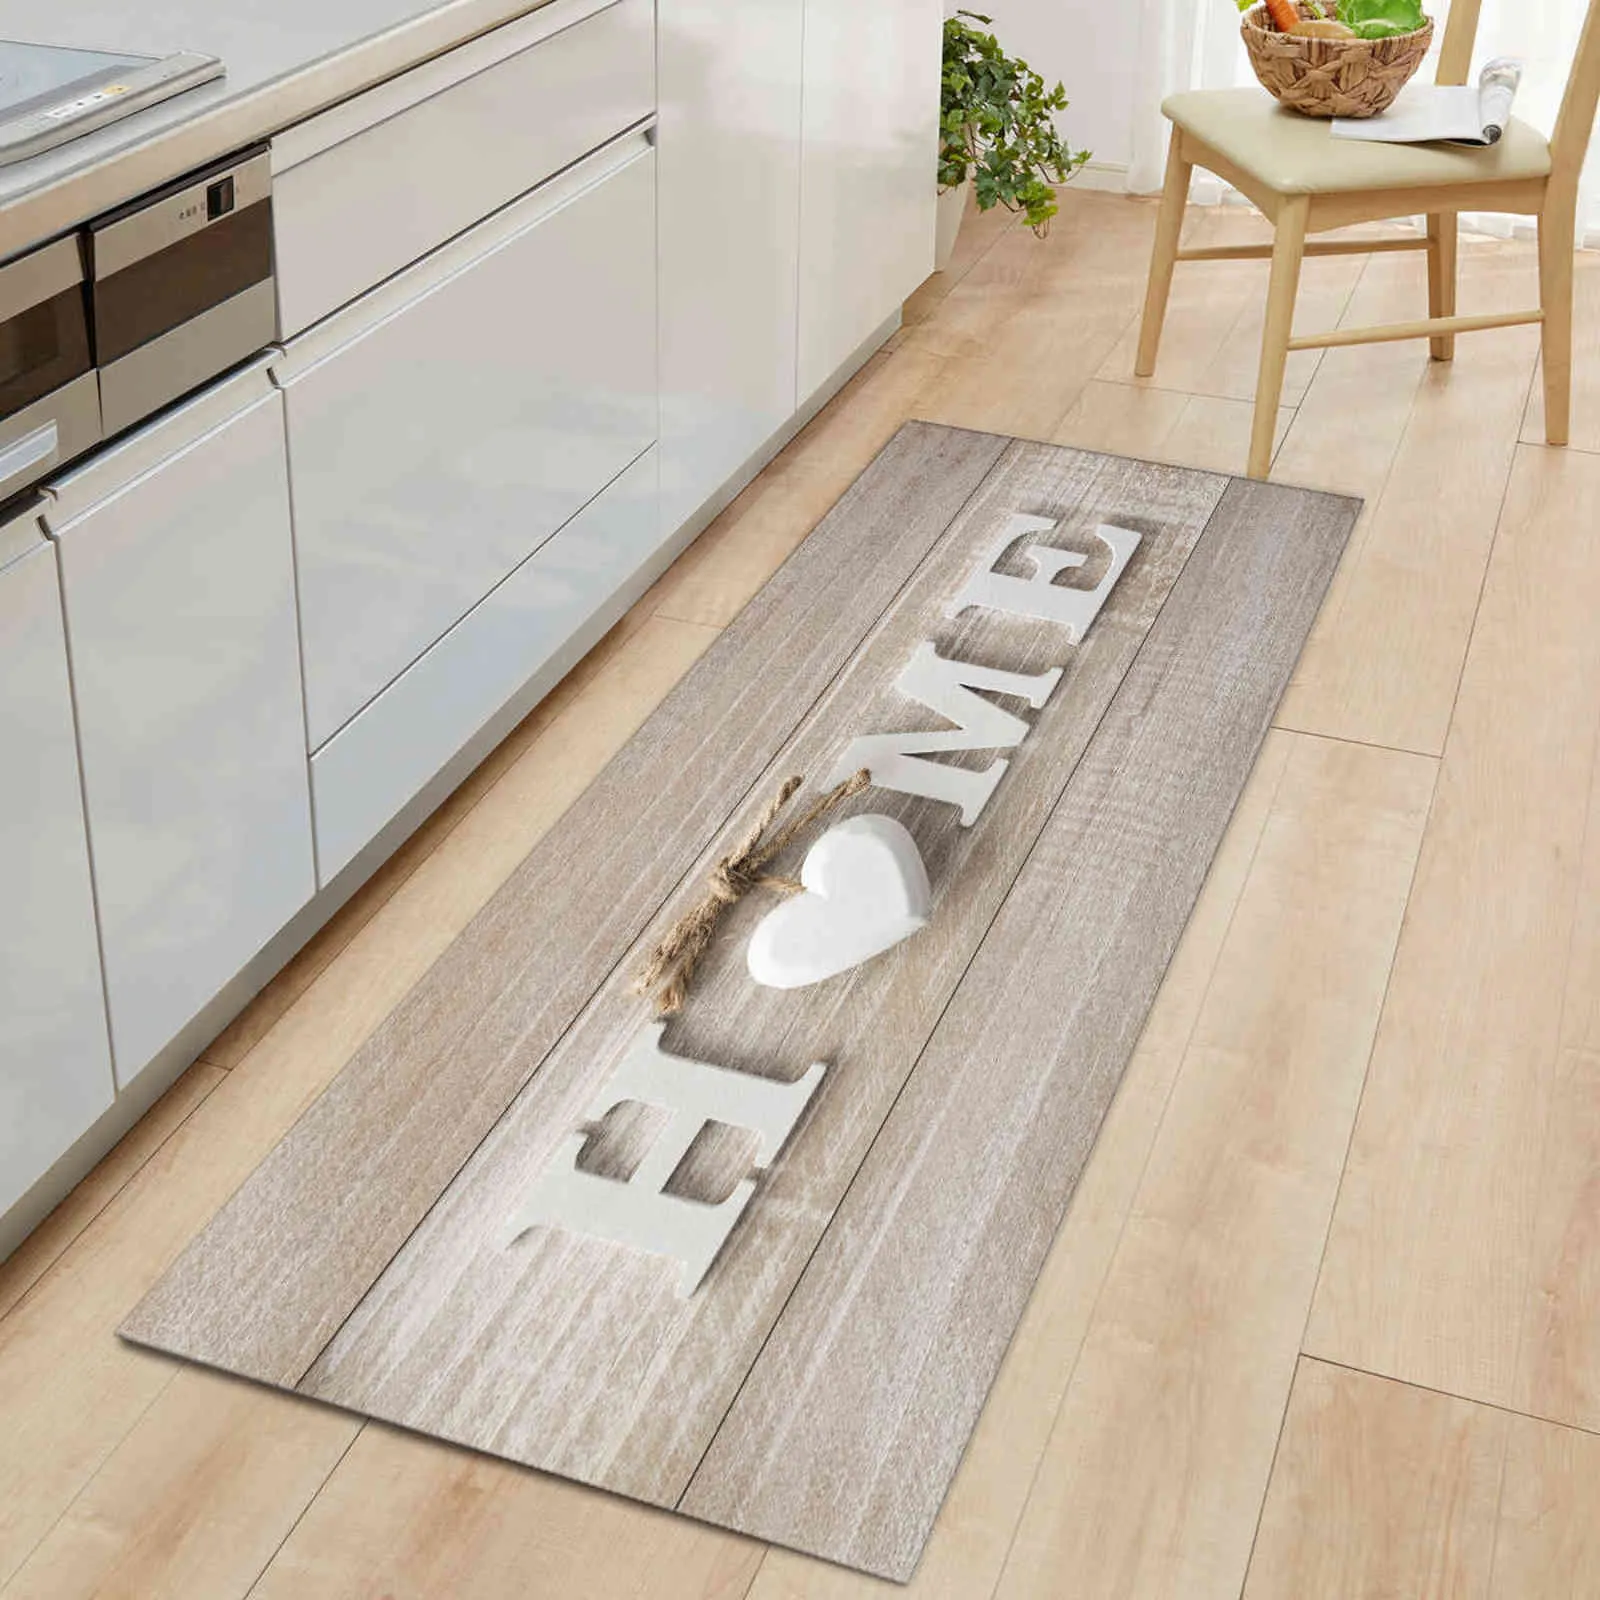 Wood Grain Door Kitchen Mat Carpet Non-slip Home Floor Rugs Welcome s for Front Living Room